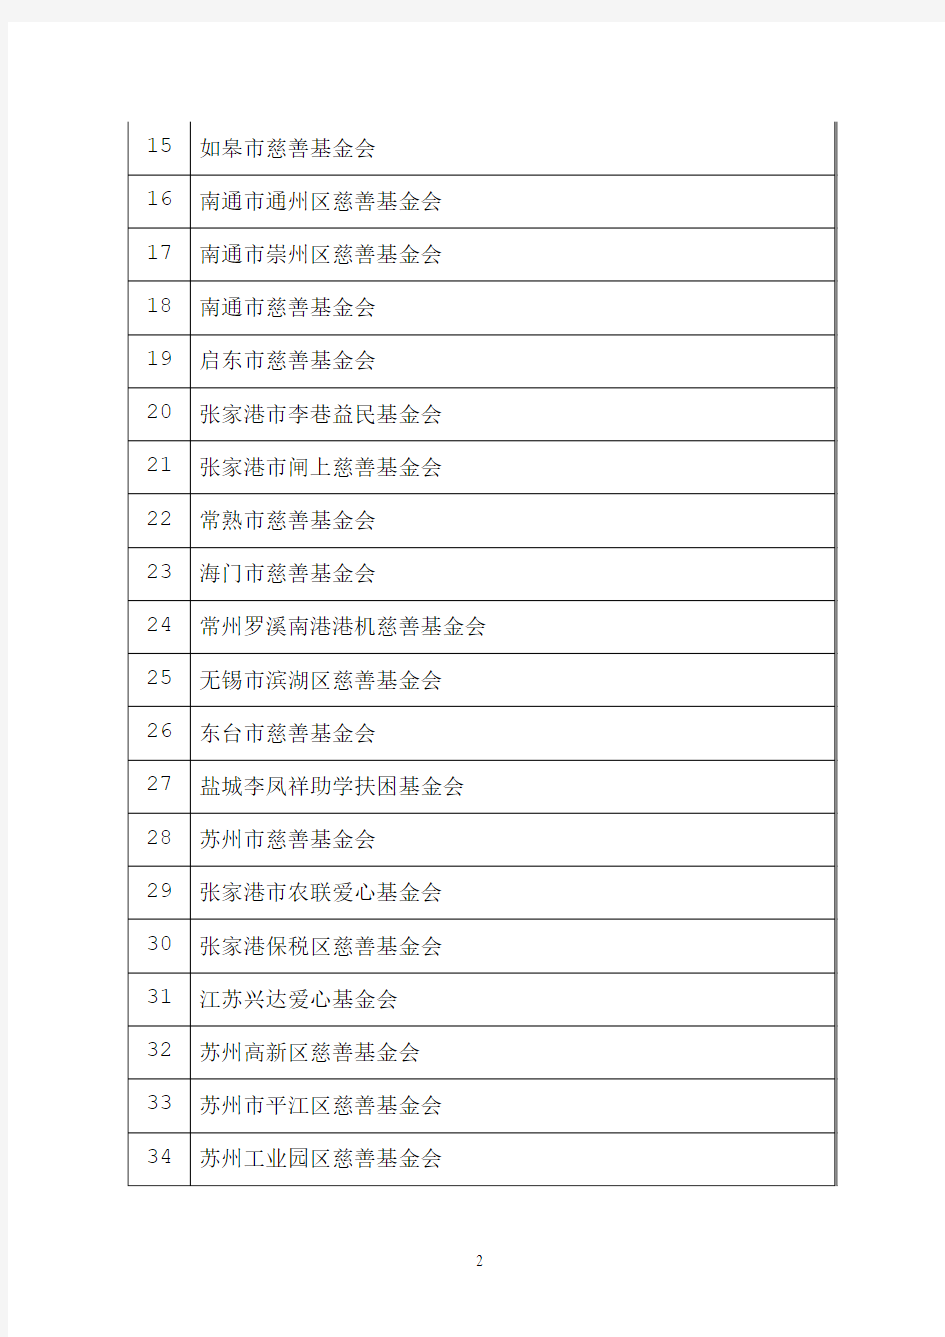 江苏省继续获得2011年度、2012年度公益性捐赠税前扣除资格的基金会和社会团体名单